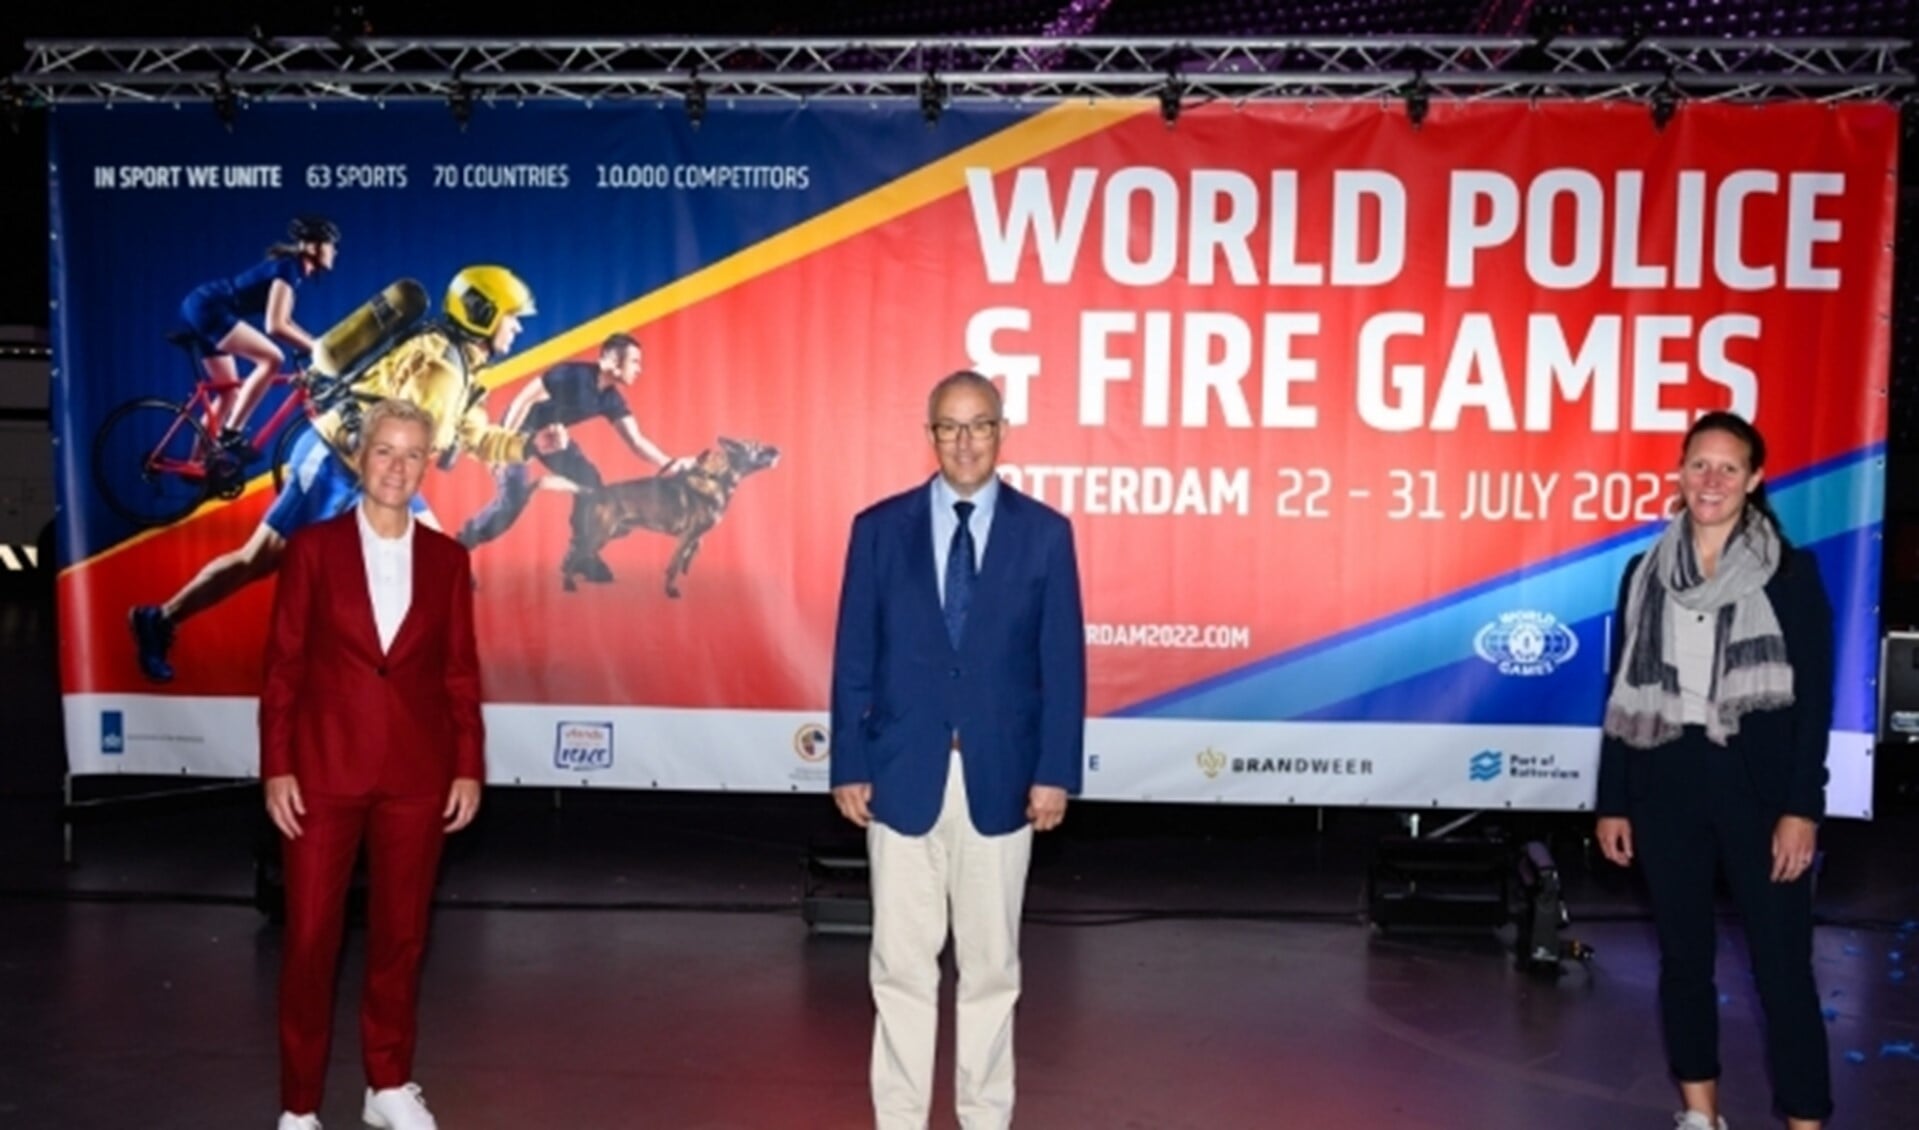 Ambassadeur Ellie Lust, burgemeester Ahmed Aboutaleb en toernooidirecteur Eva van der Vegt.